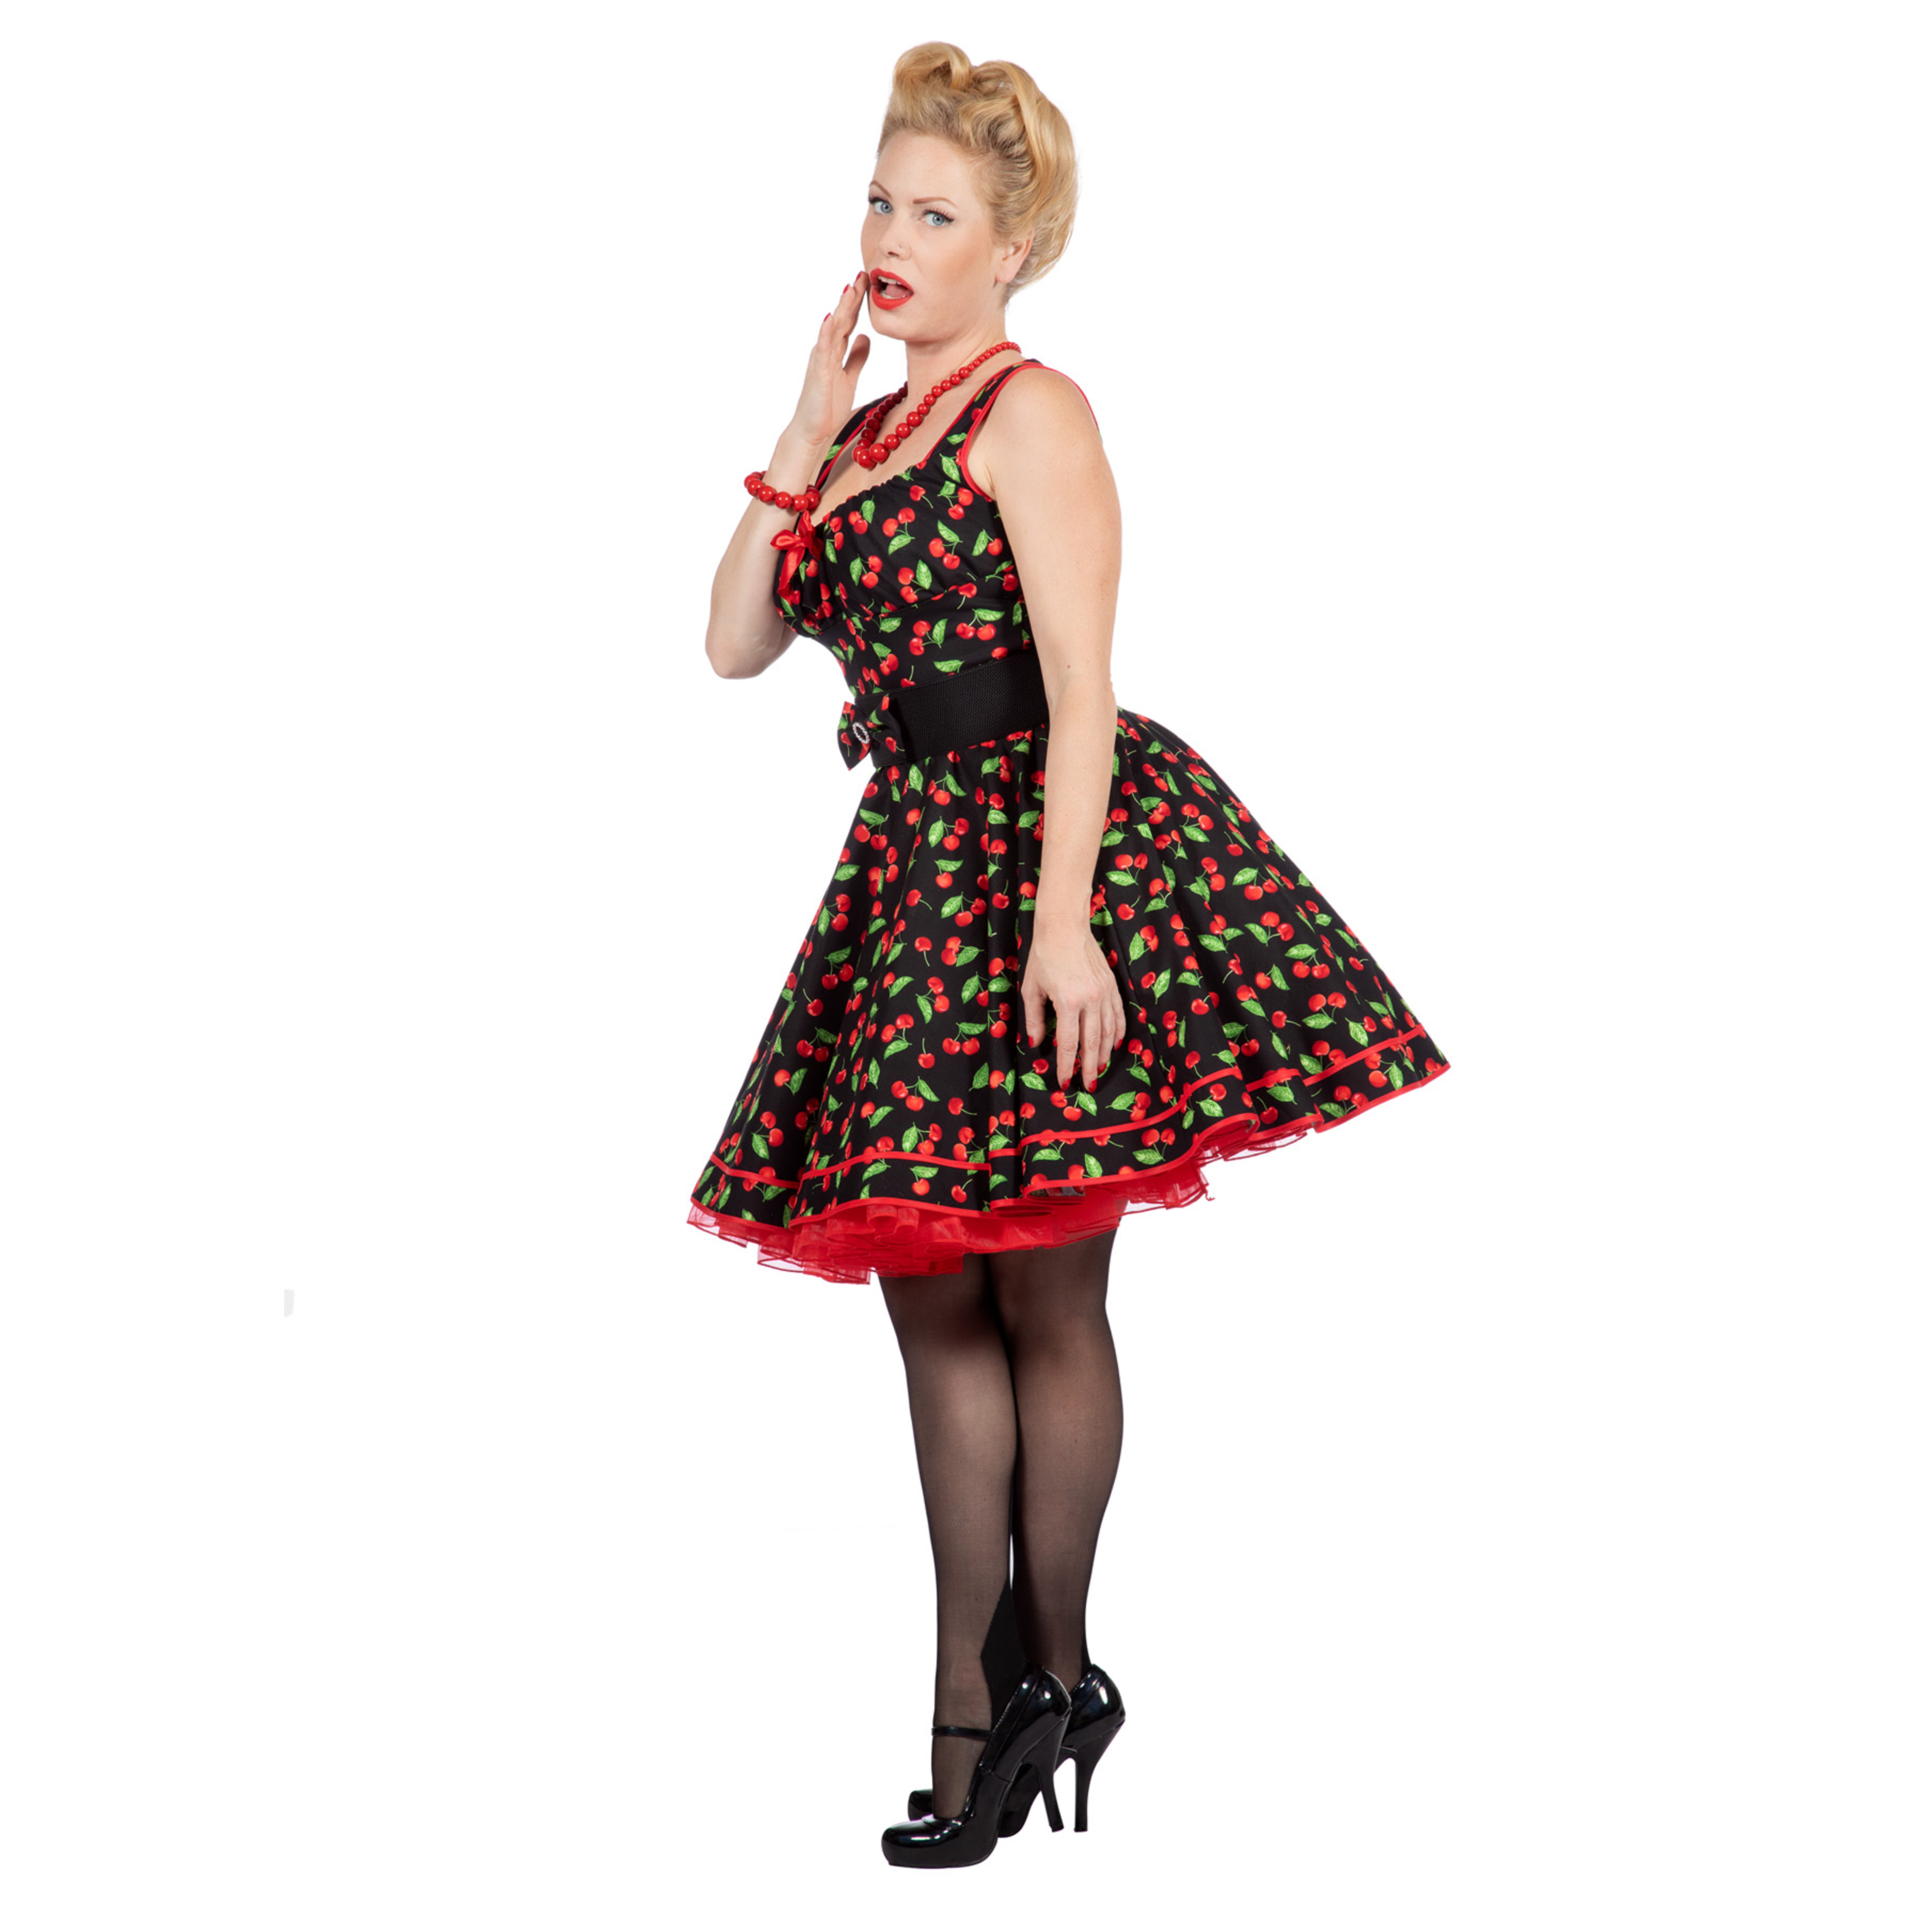 SALE Premium-Line Damen-Kleid Rockabilly Cherry, Gr. 36 Bild 2